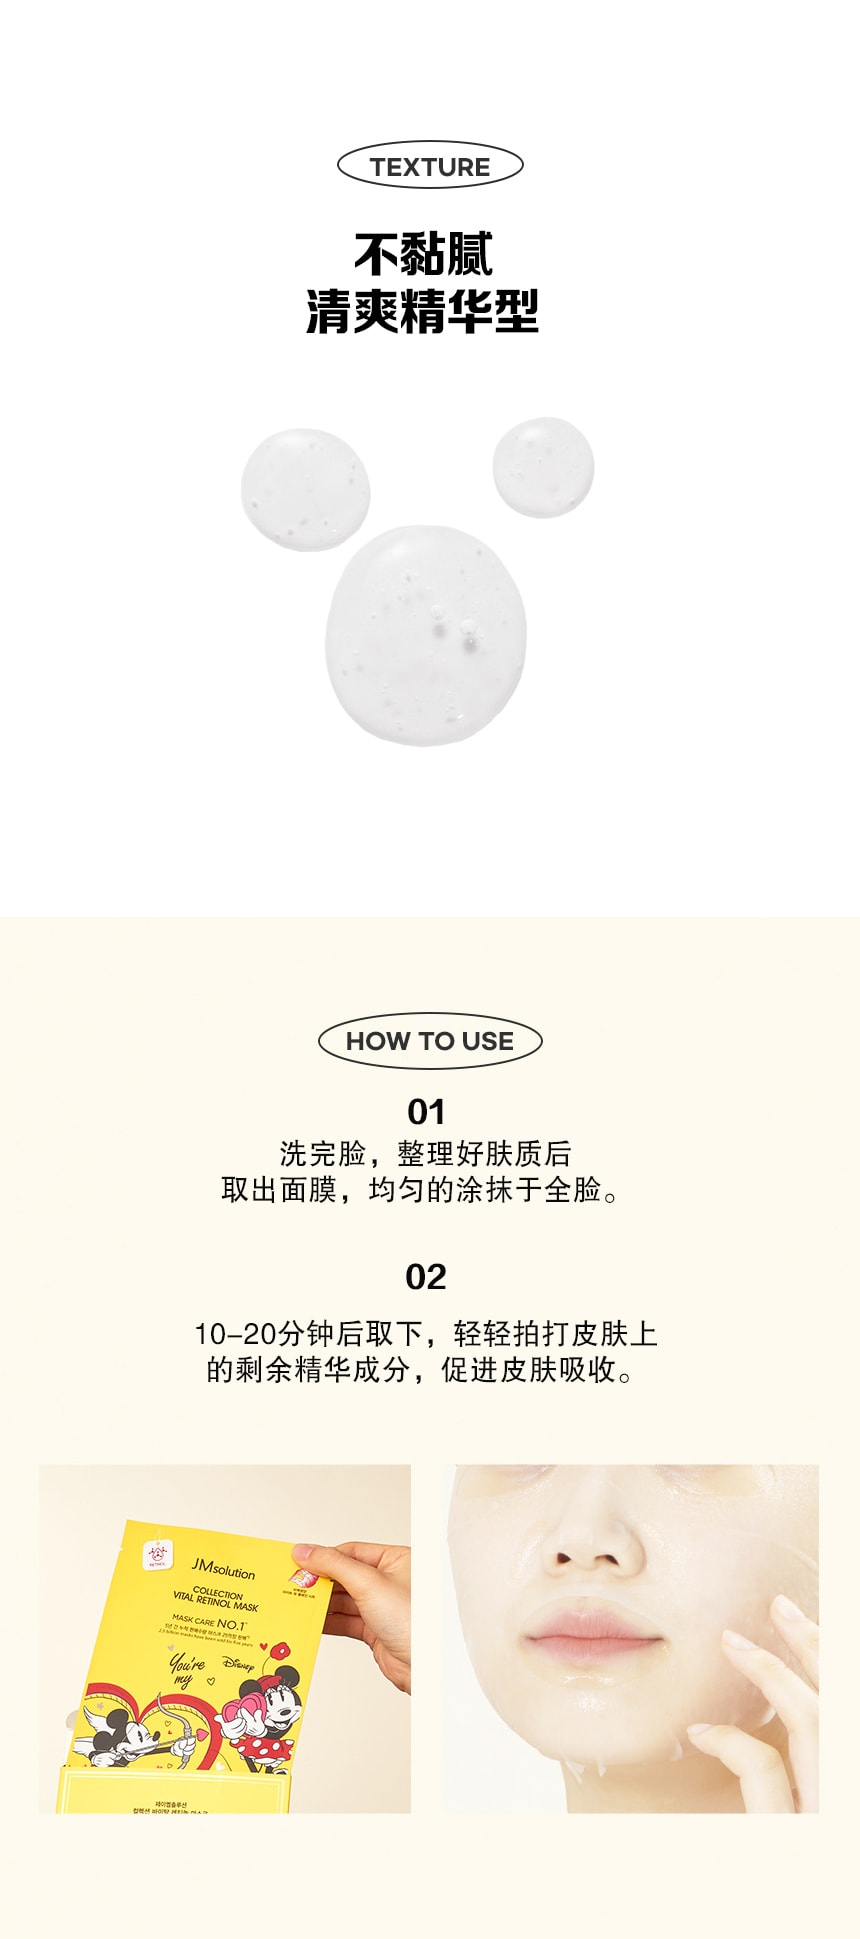 韓國 JMsolution 【迪士尼聯名款面膜】煥白肌膚 補充營養 #米奇米妮-泛醇(附卡通貼紙) 10片/ 1 盒